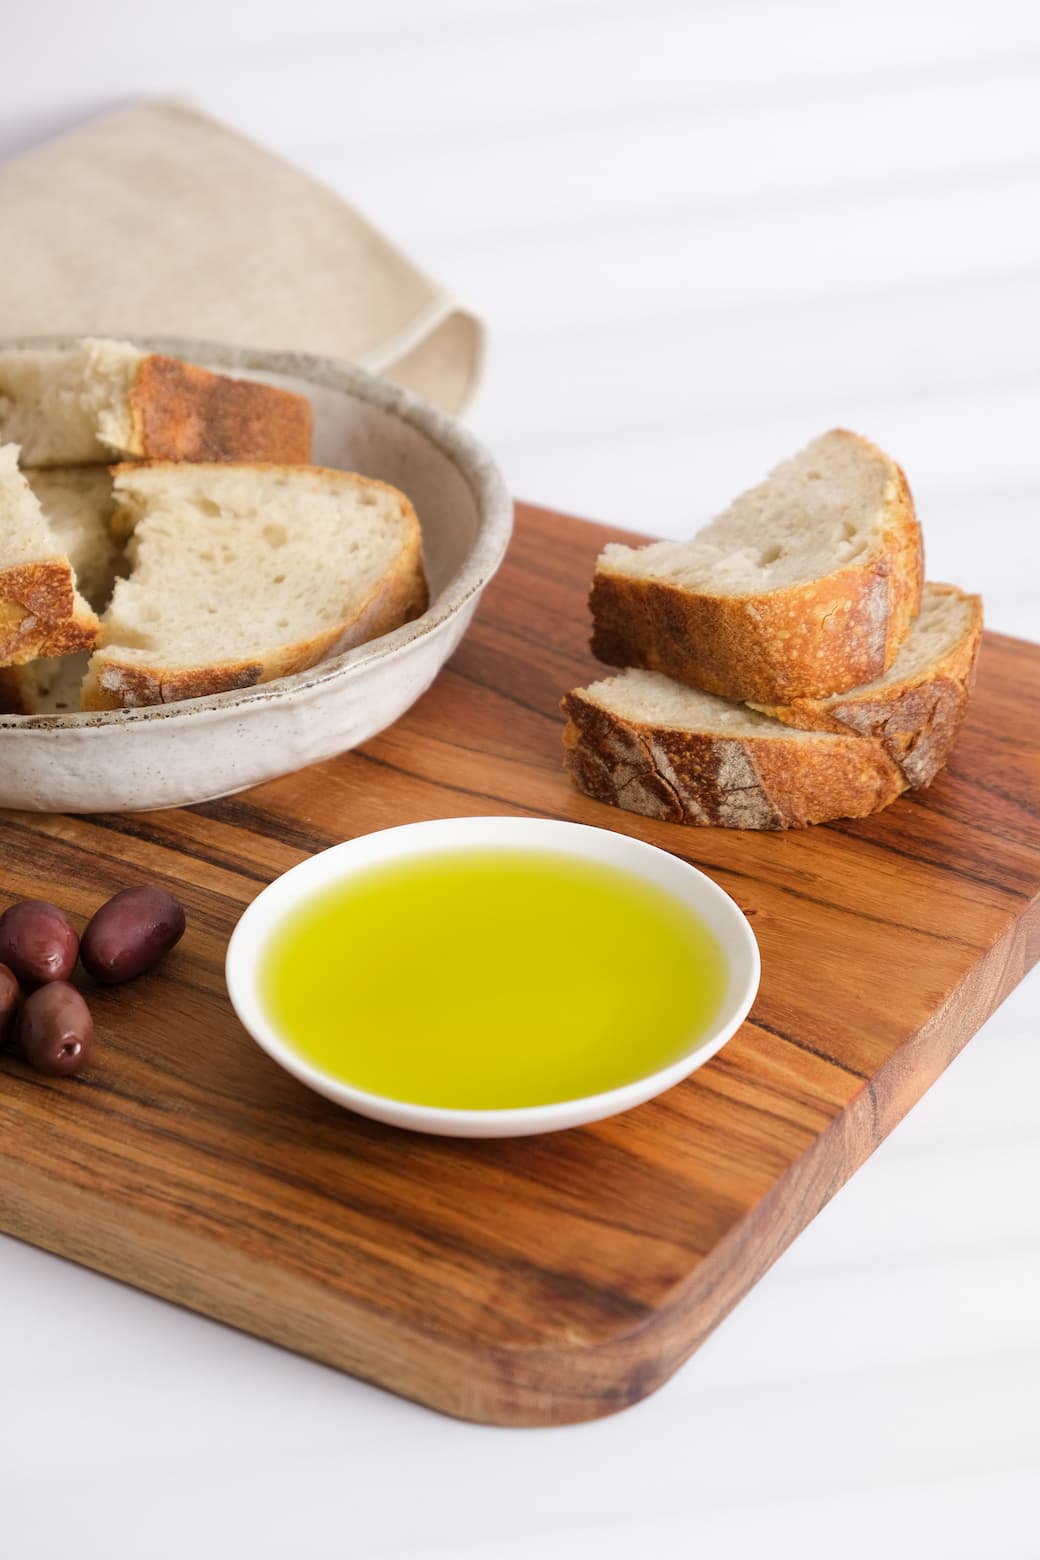 Extra Virgin Olive Oil (10L) - Kangaroo Island Olives